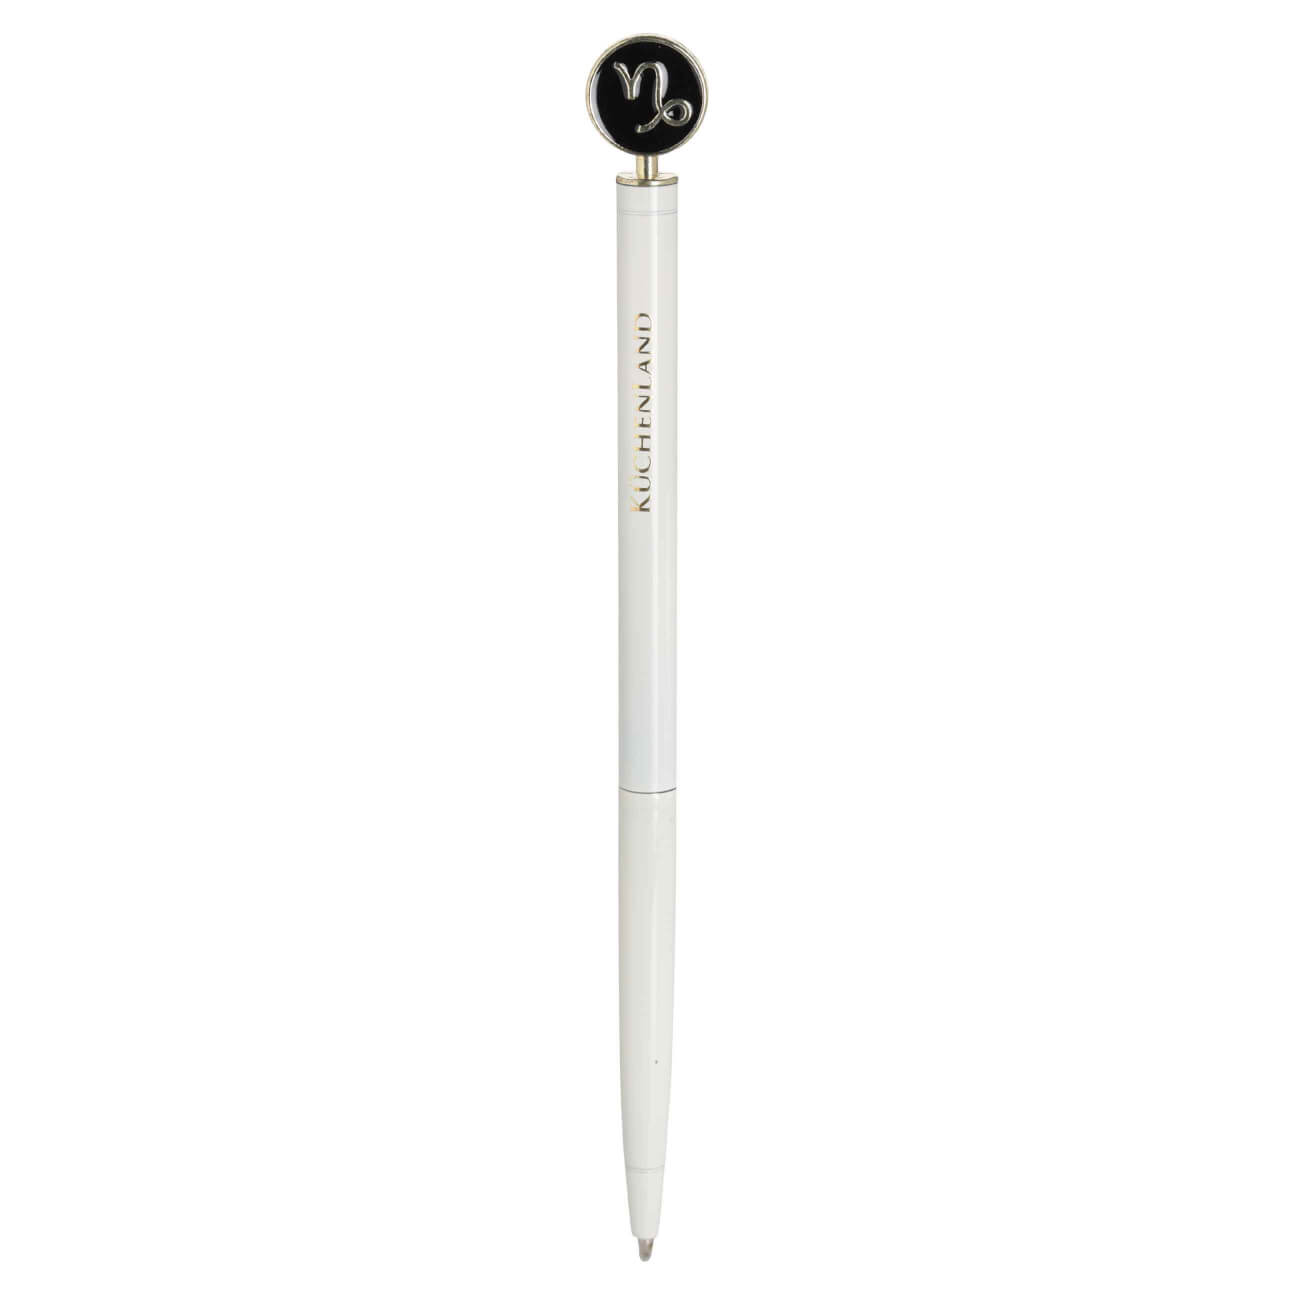 Ручка шариковая, 15 см, с фигуркой, сталь, молочно-золотистая, Козерог, Zodiac шариковая ручка hatber